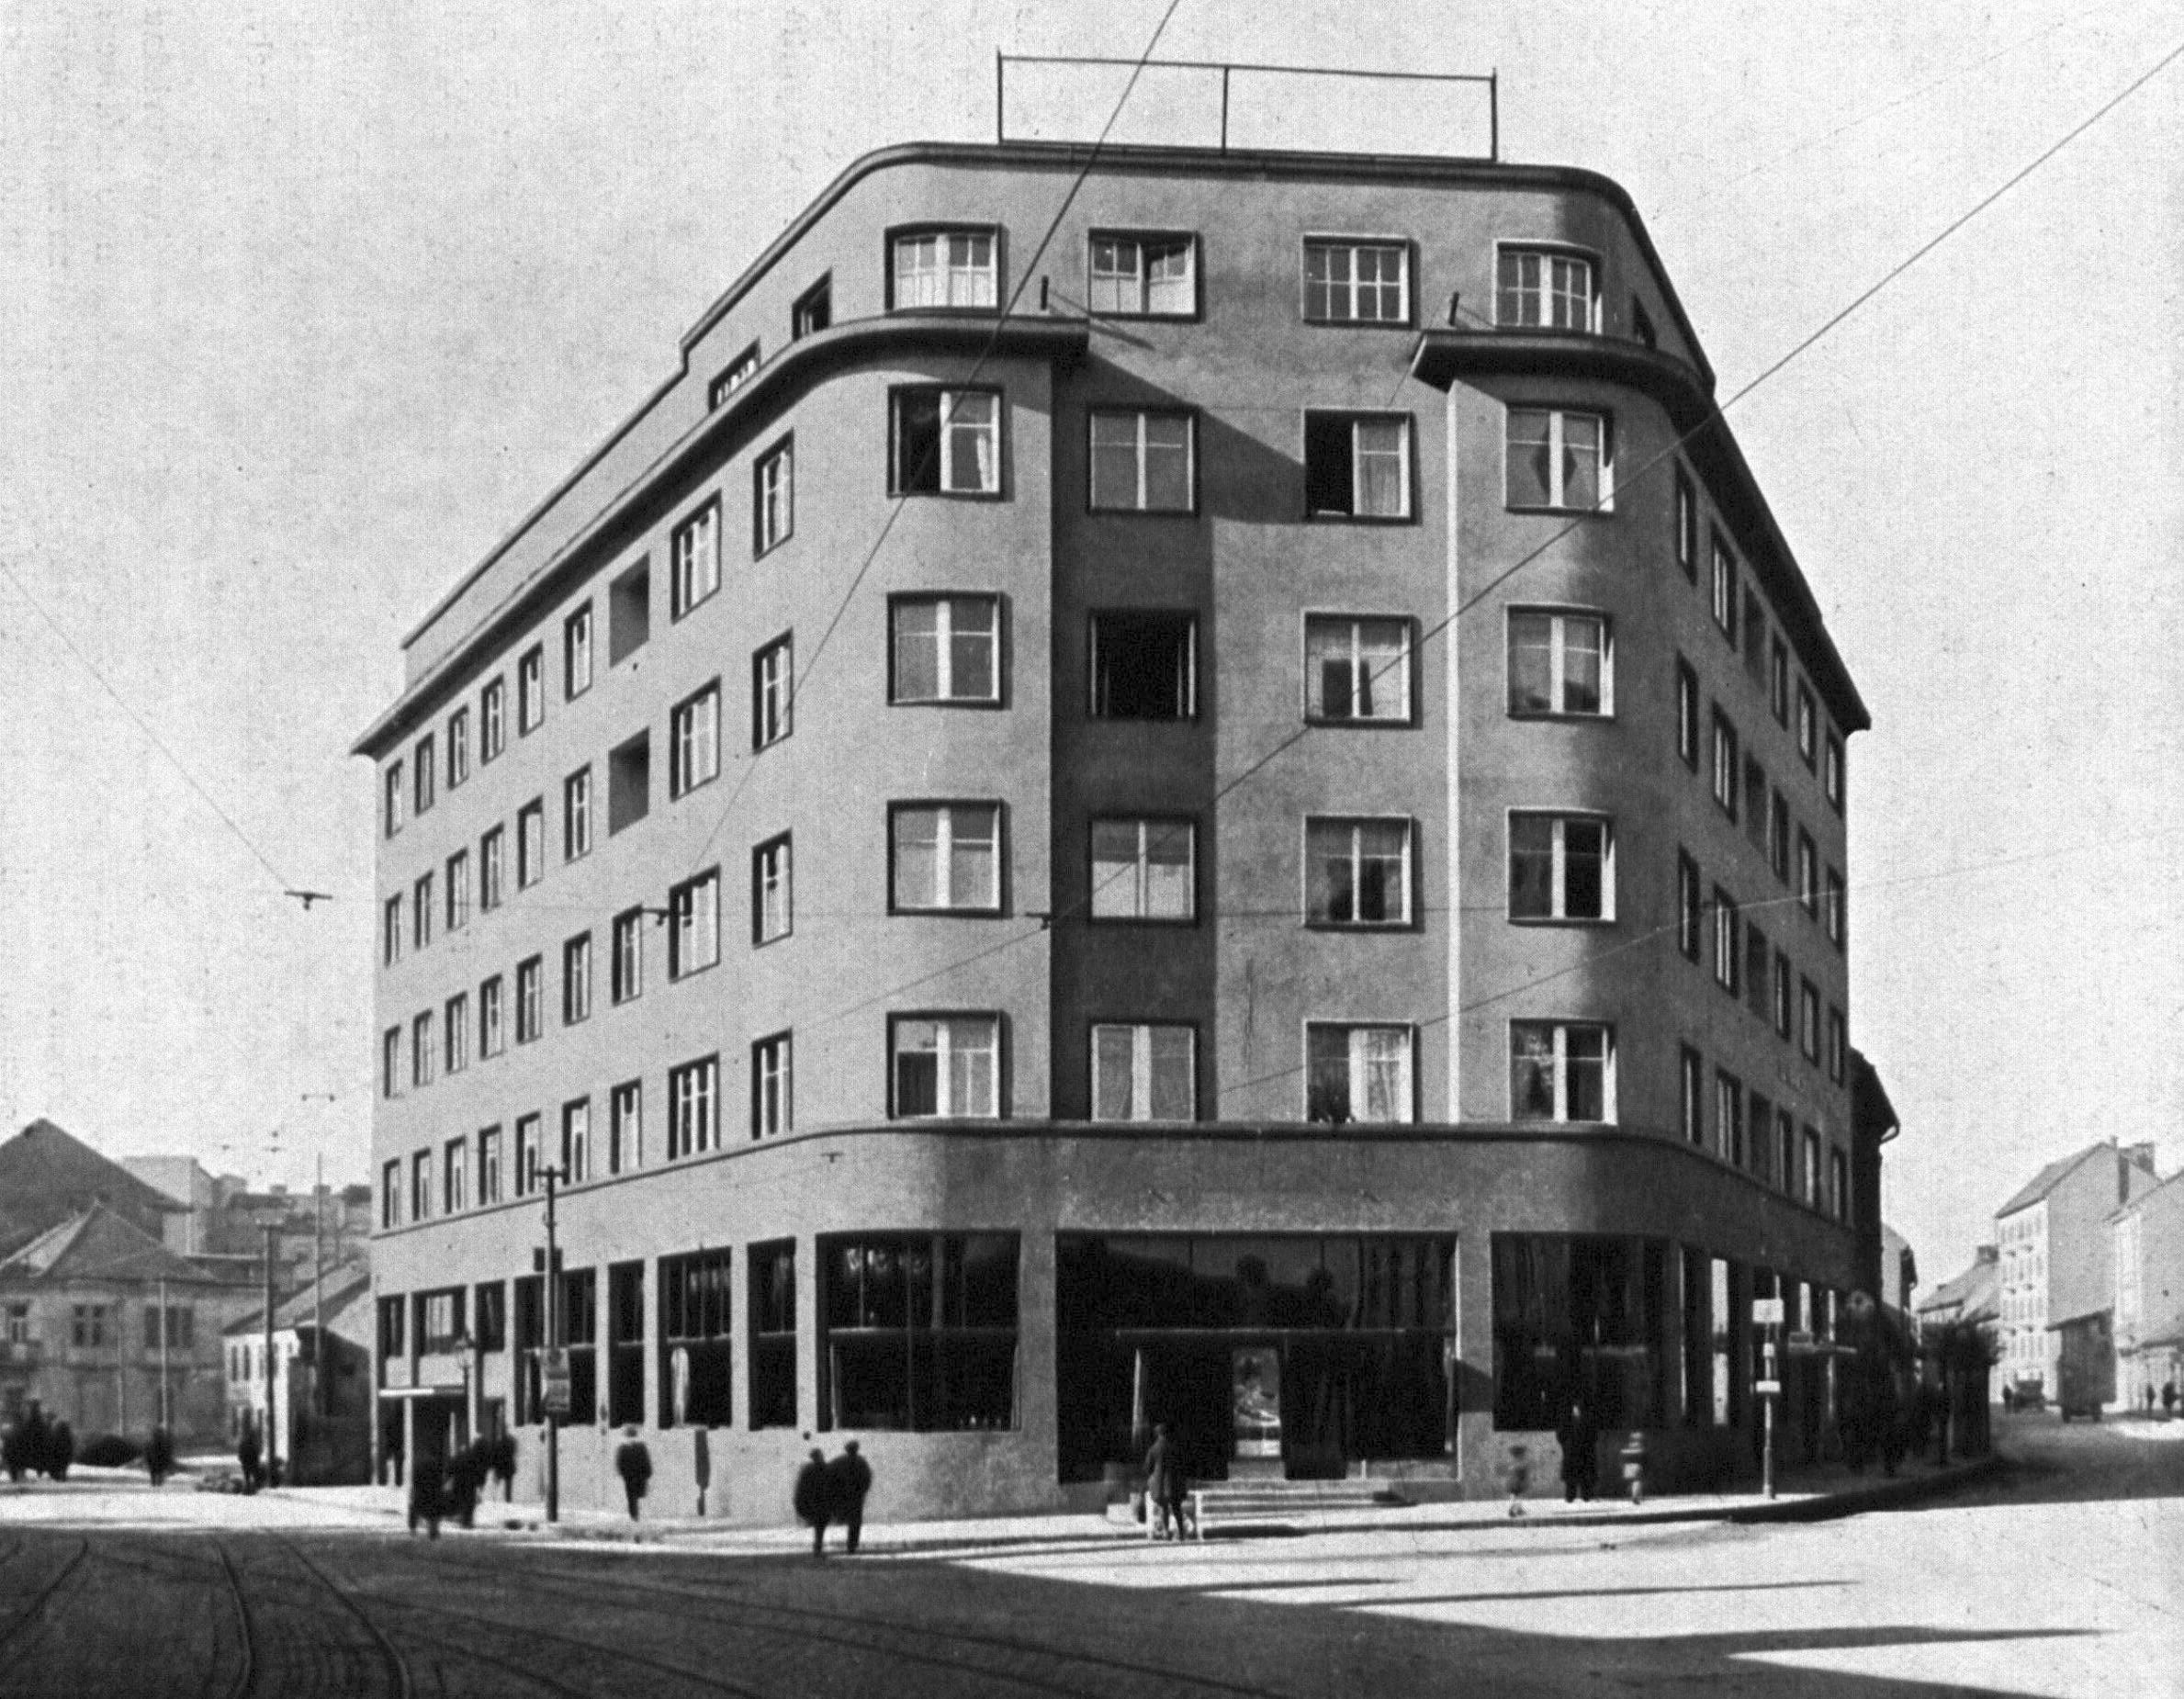 Nájomný bytový dom s kaviarňou a kinom Metropol v Bratislave, 1927 – 1928. Repro: Slovenský staviteľ, 1, 1931, č. 5, s. 117.